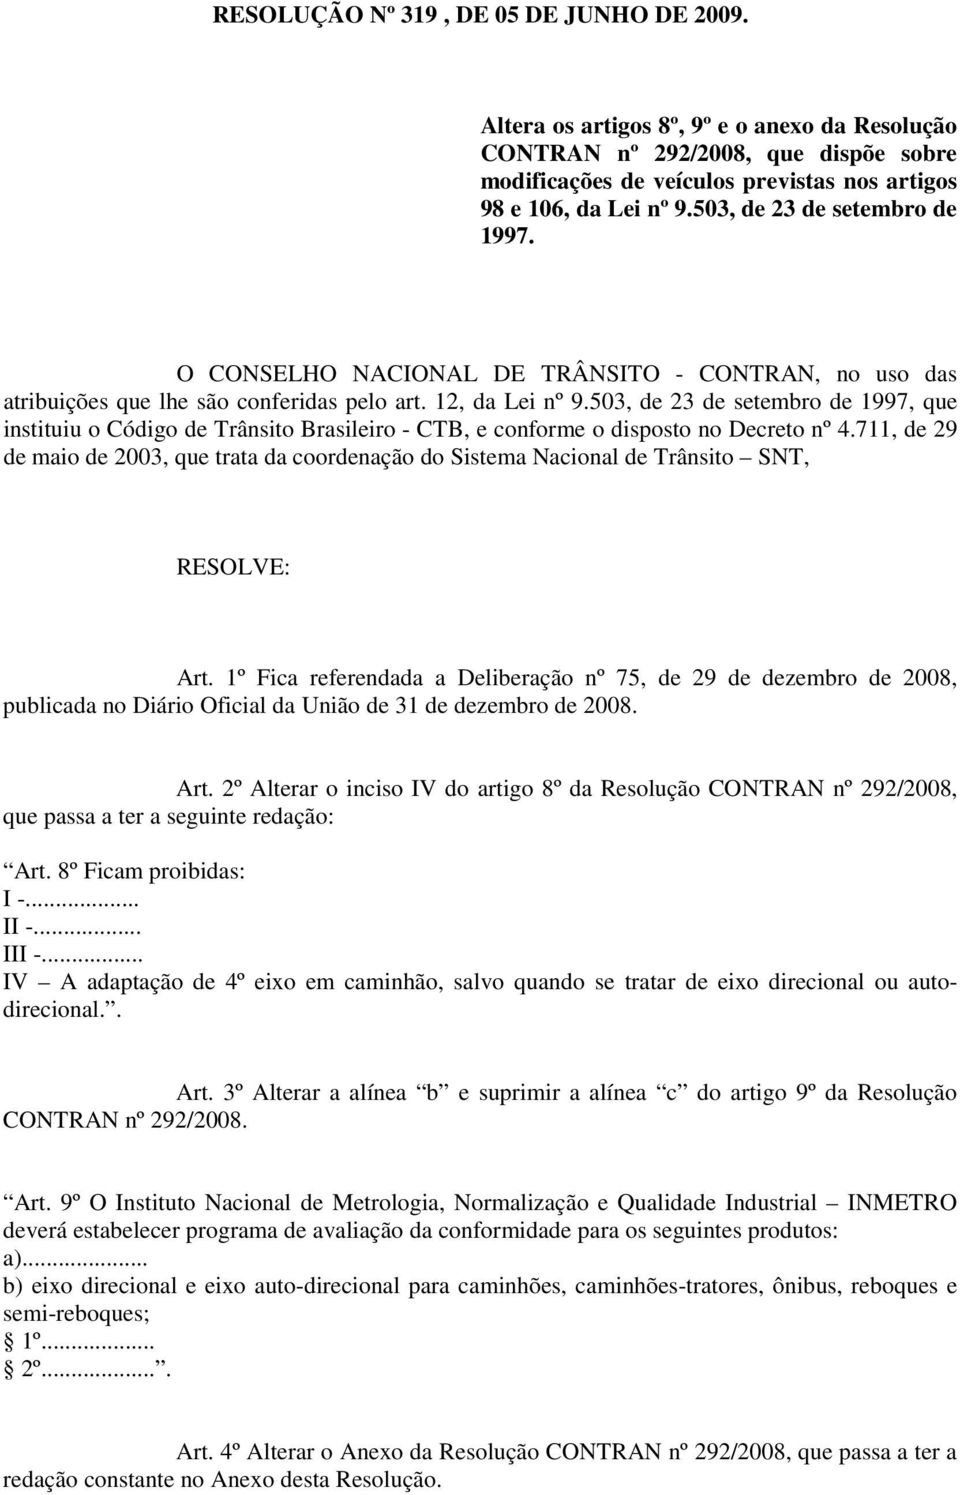 503, de 23 de setembro de 1997, que instituiu o Código de Trânsito Brasileiro - CTB, e conforme o disposto no Decreto nº 4.